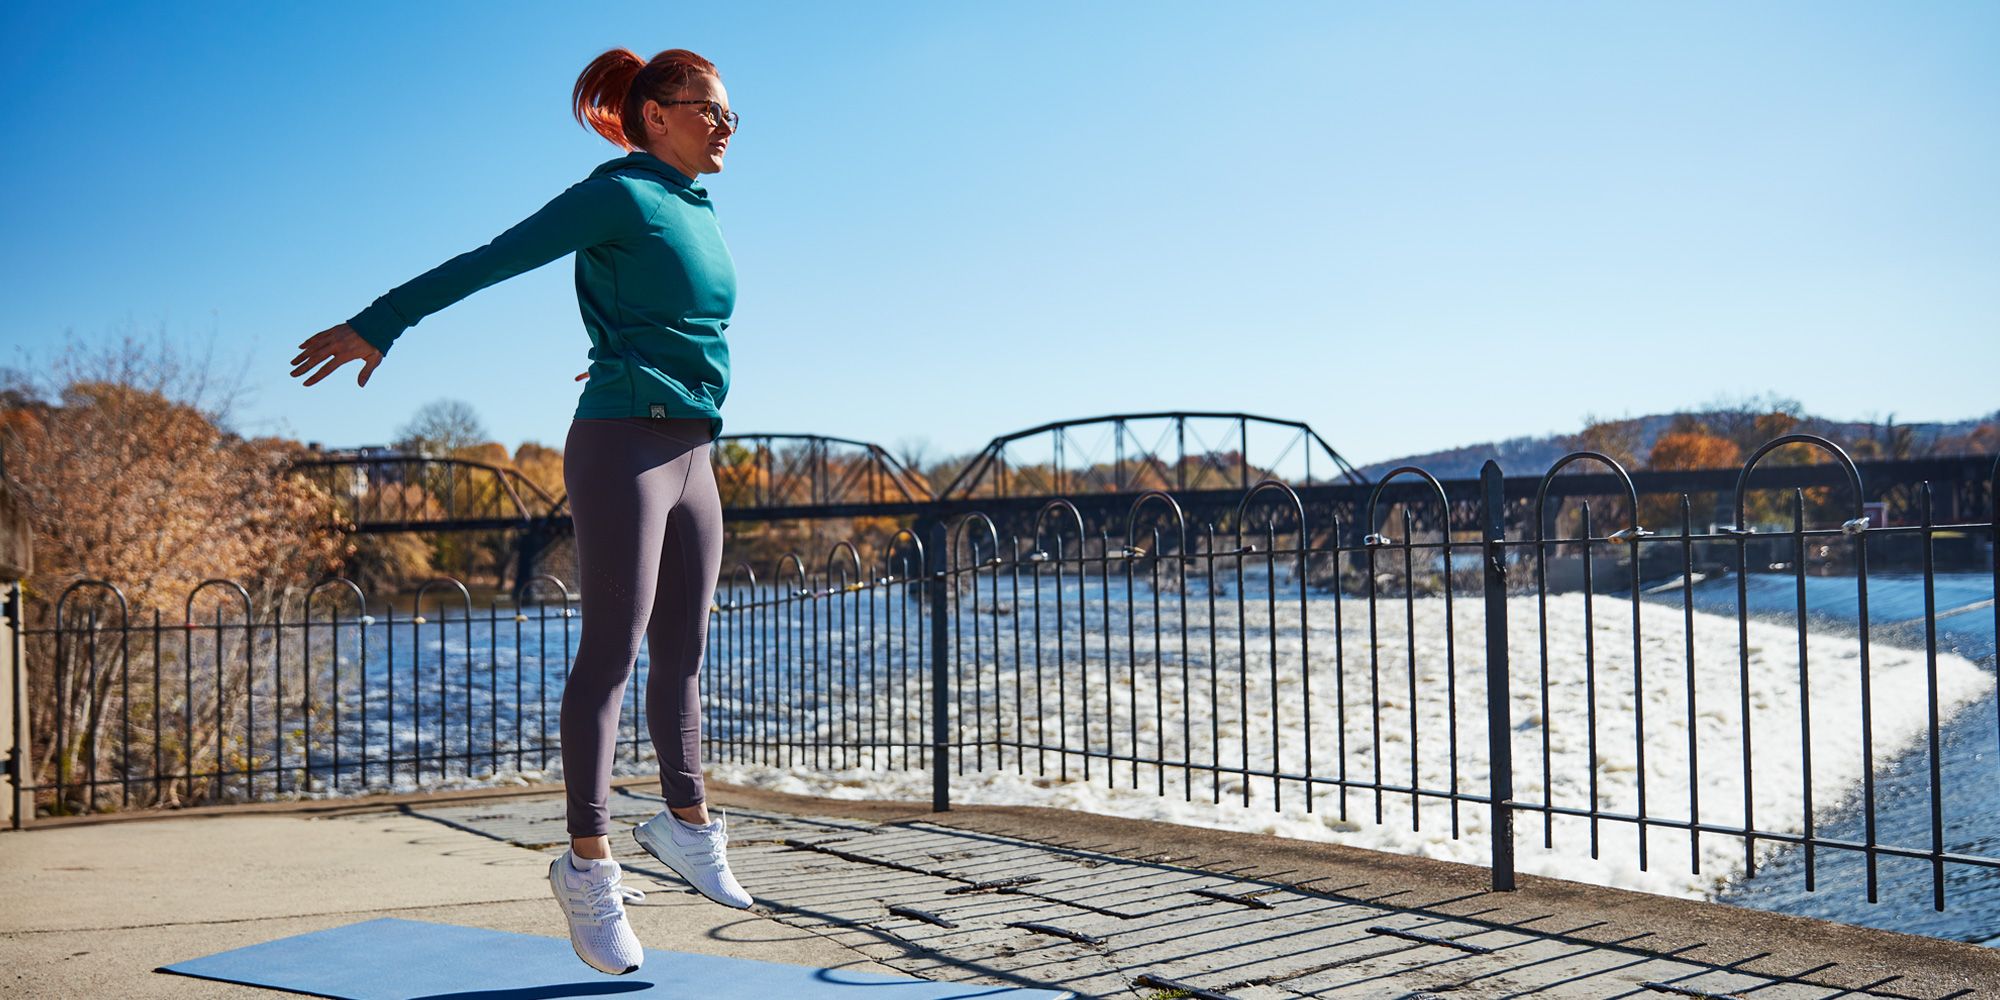 Women's Sports Wear Female Workout Tops T-shirtGym Woman Sport Shirt Yoga  Crop Top Fitness Running Jogging Seamless Long Sleeve